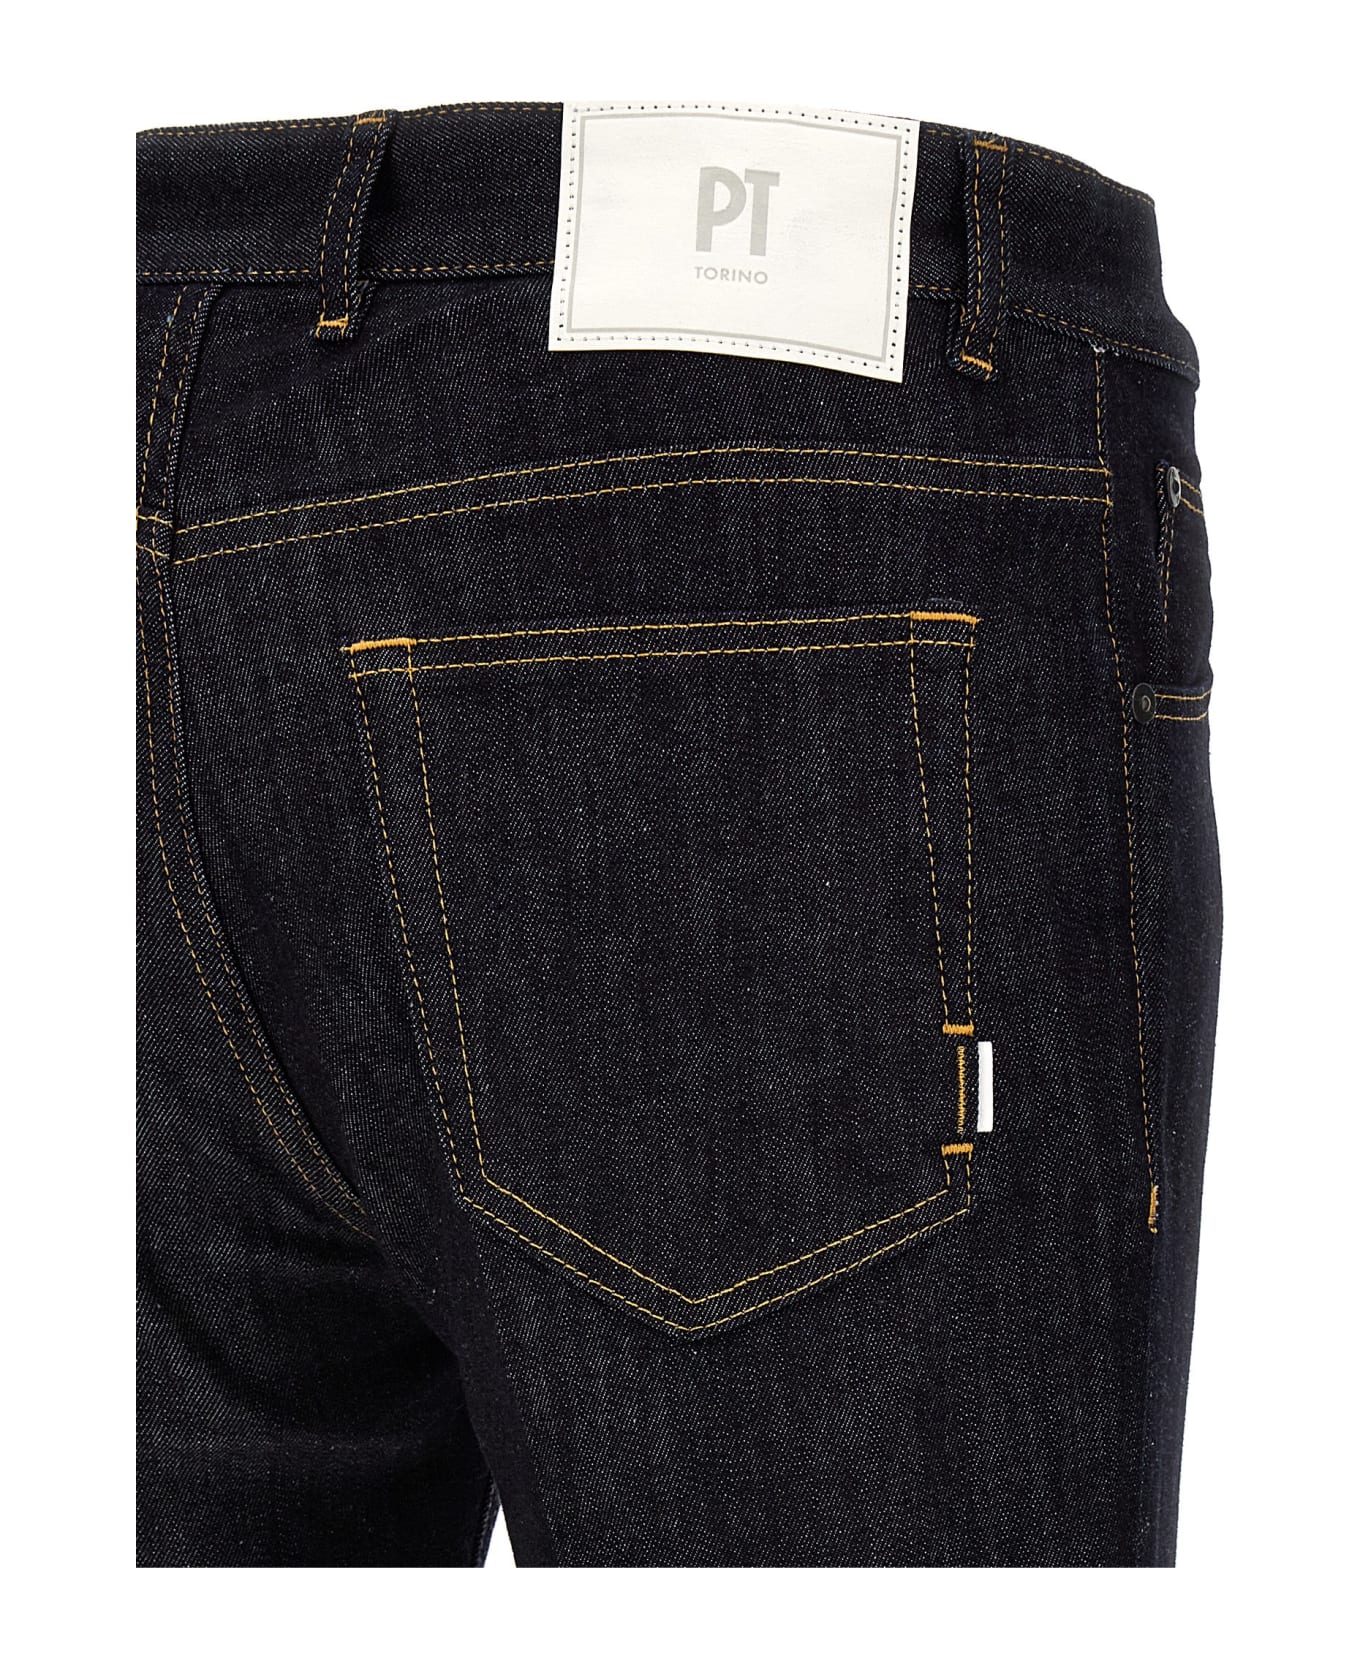 PT Torino 'reggae' Jeans - Denim